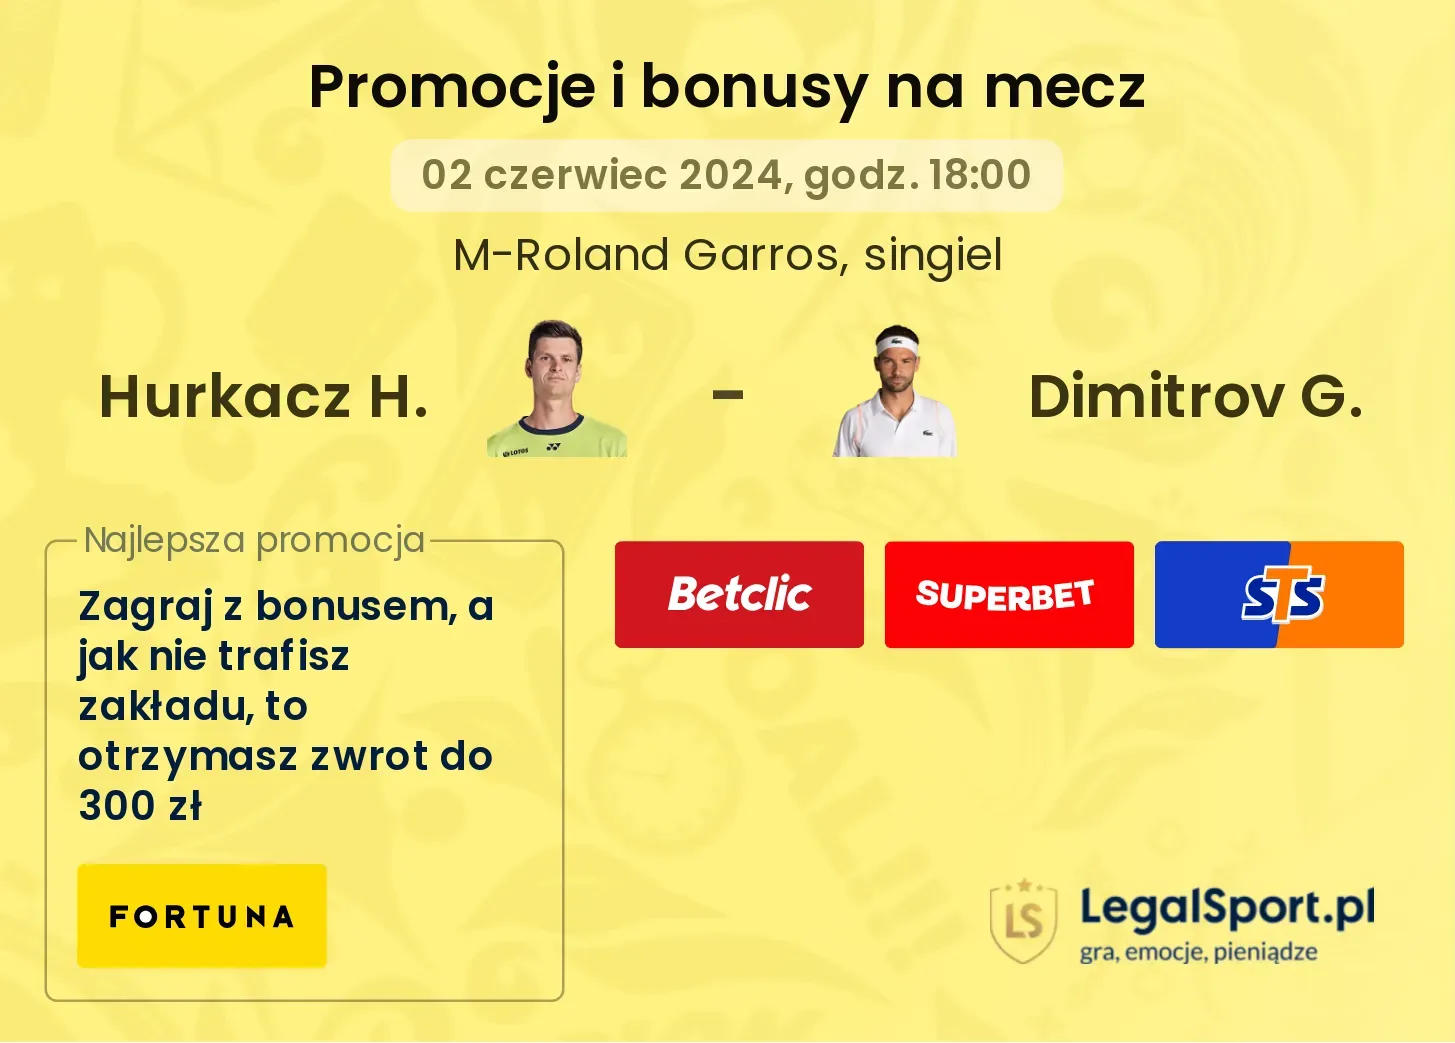 Hurkacz H. - Dimitrov G. bonusy i promocje (02.06, 18:00)